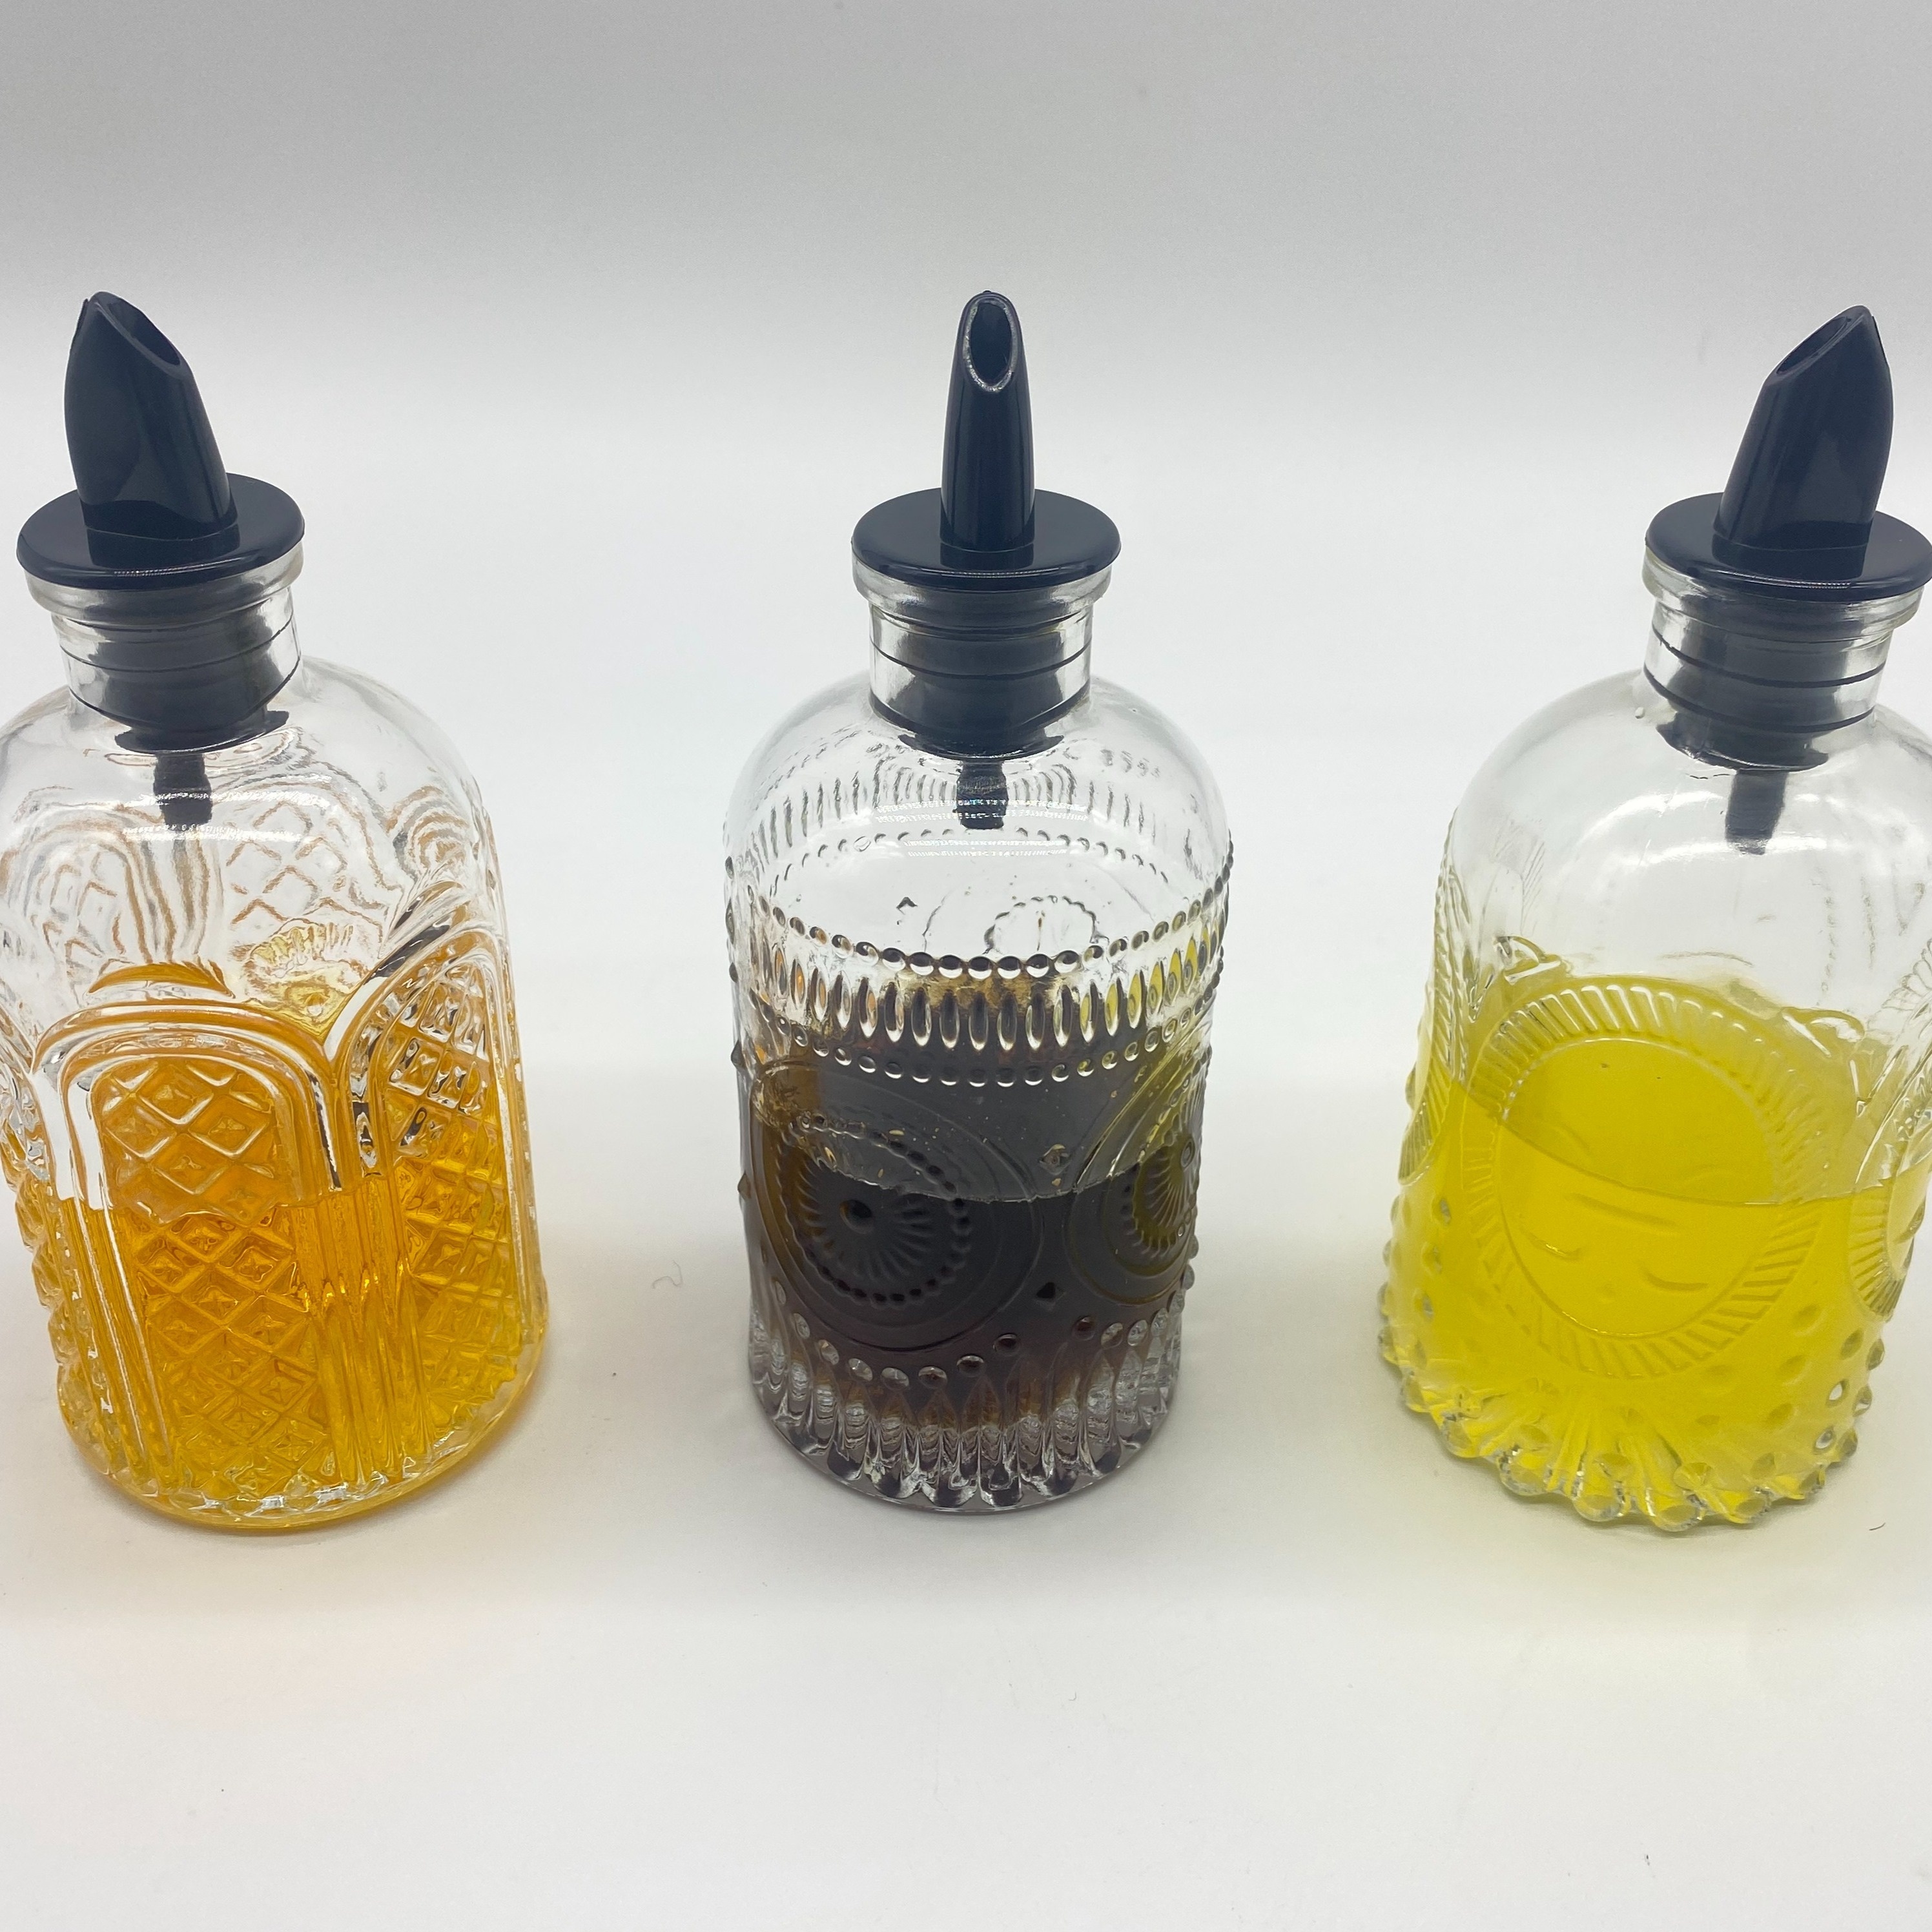 MGE - Tarro para Miel con Cuchara - Dispensador/Dosificador para Miel,  Sirope y Salsas - Mielera - Tarro Miel Cristal - Recipiente para Miel -  Bote de Miel con Cuchara - Vidrio 